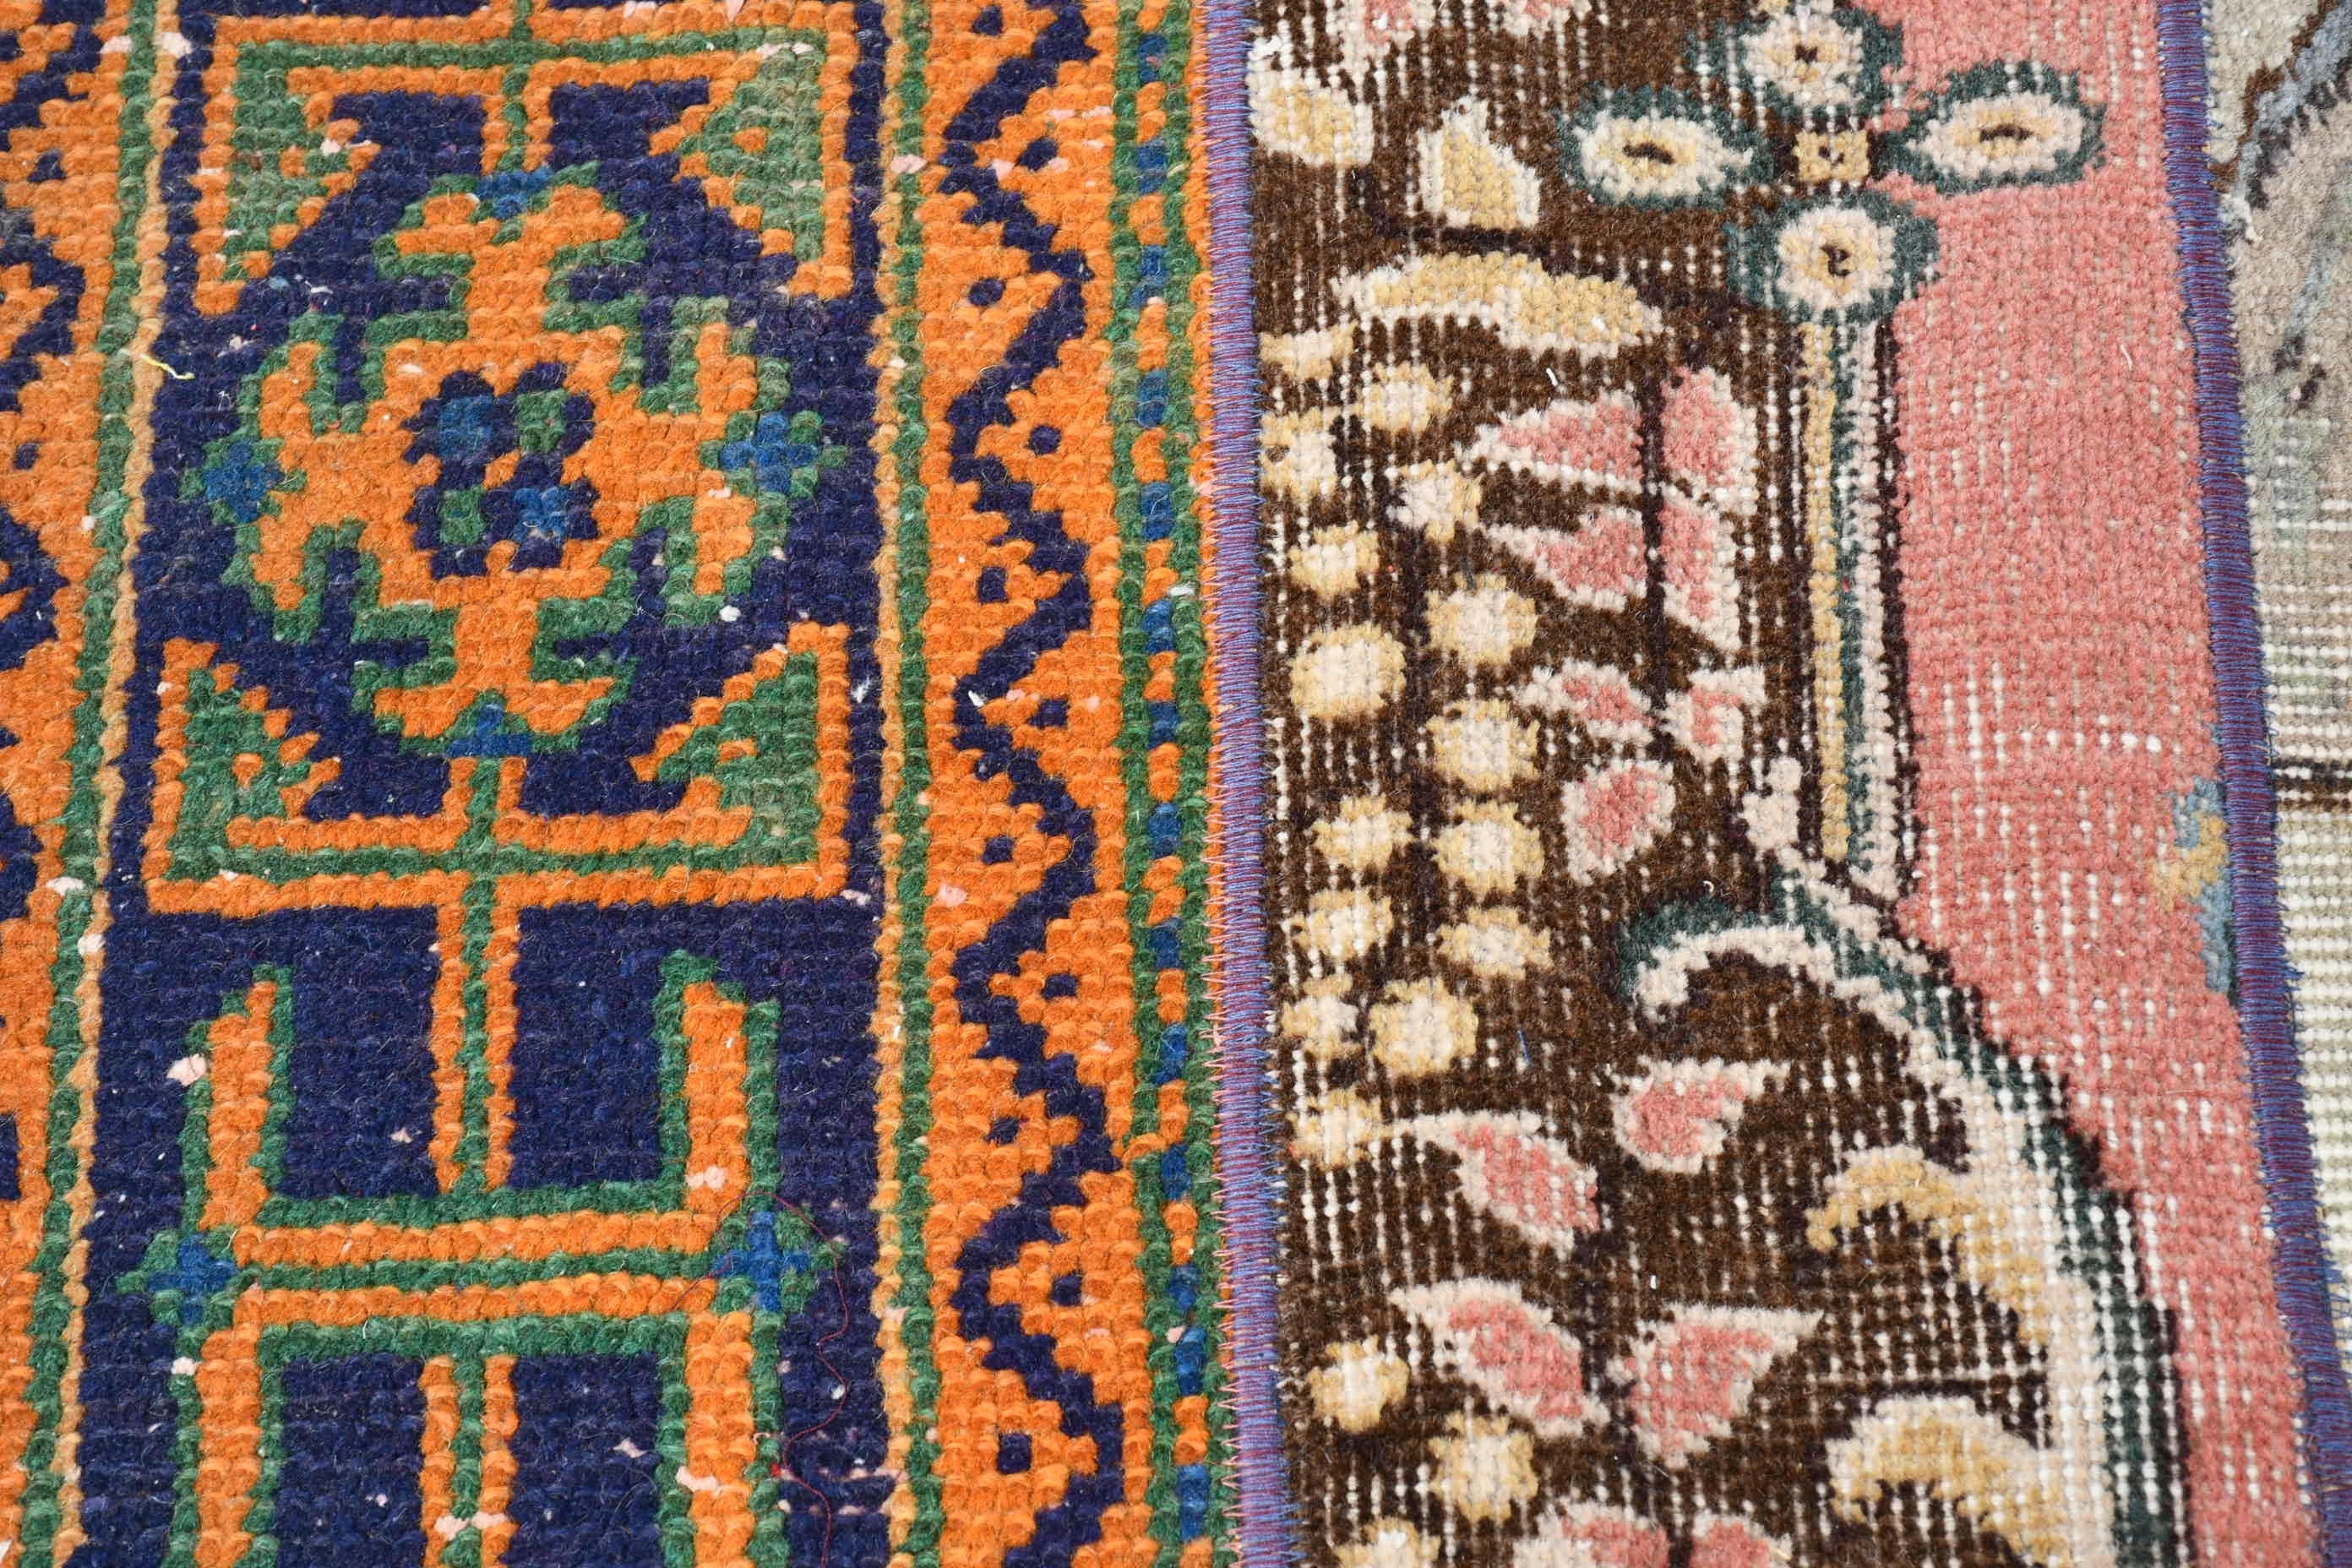 Bright Rug, Vintage Rugs, Moroccan Rug, Oushak Rugs, Turkish Rug, Living Room Rug, 4.7x9.6 ft Large Rugs, Red Floor Rugs, Dining Room Rug